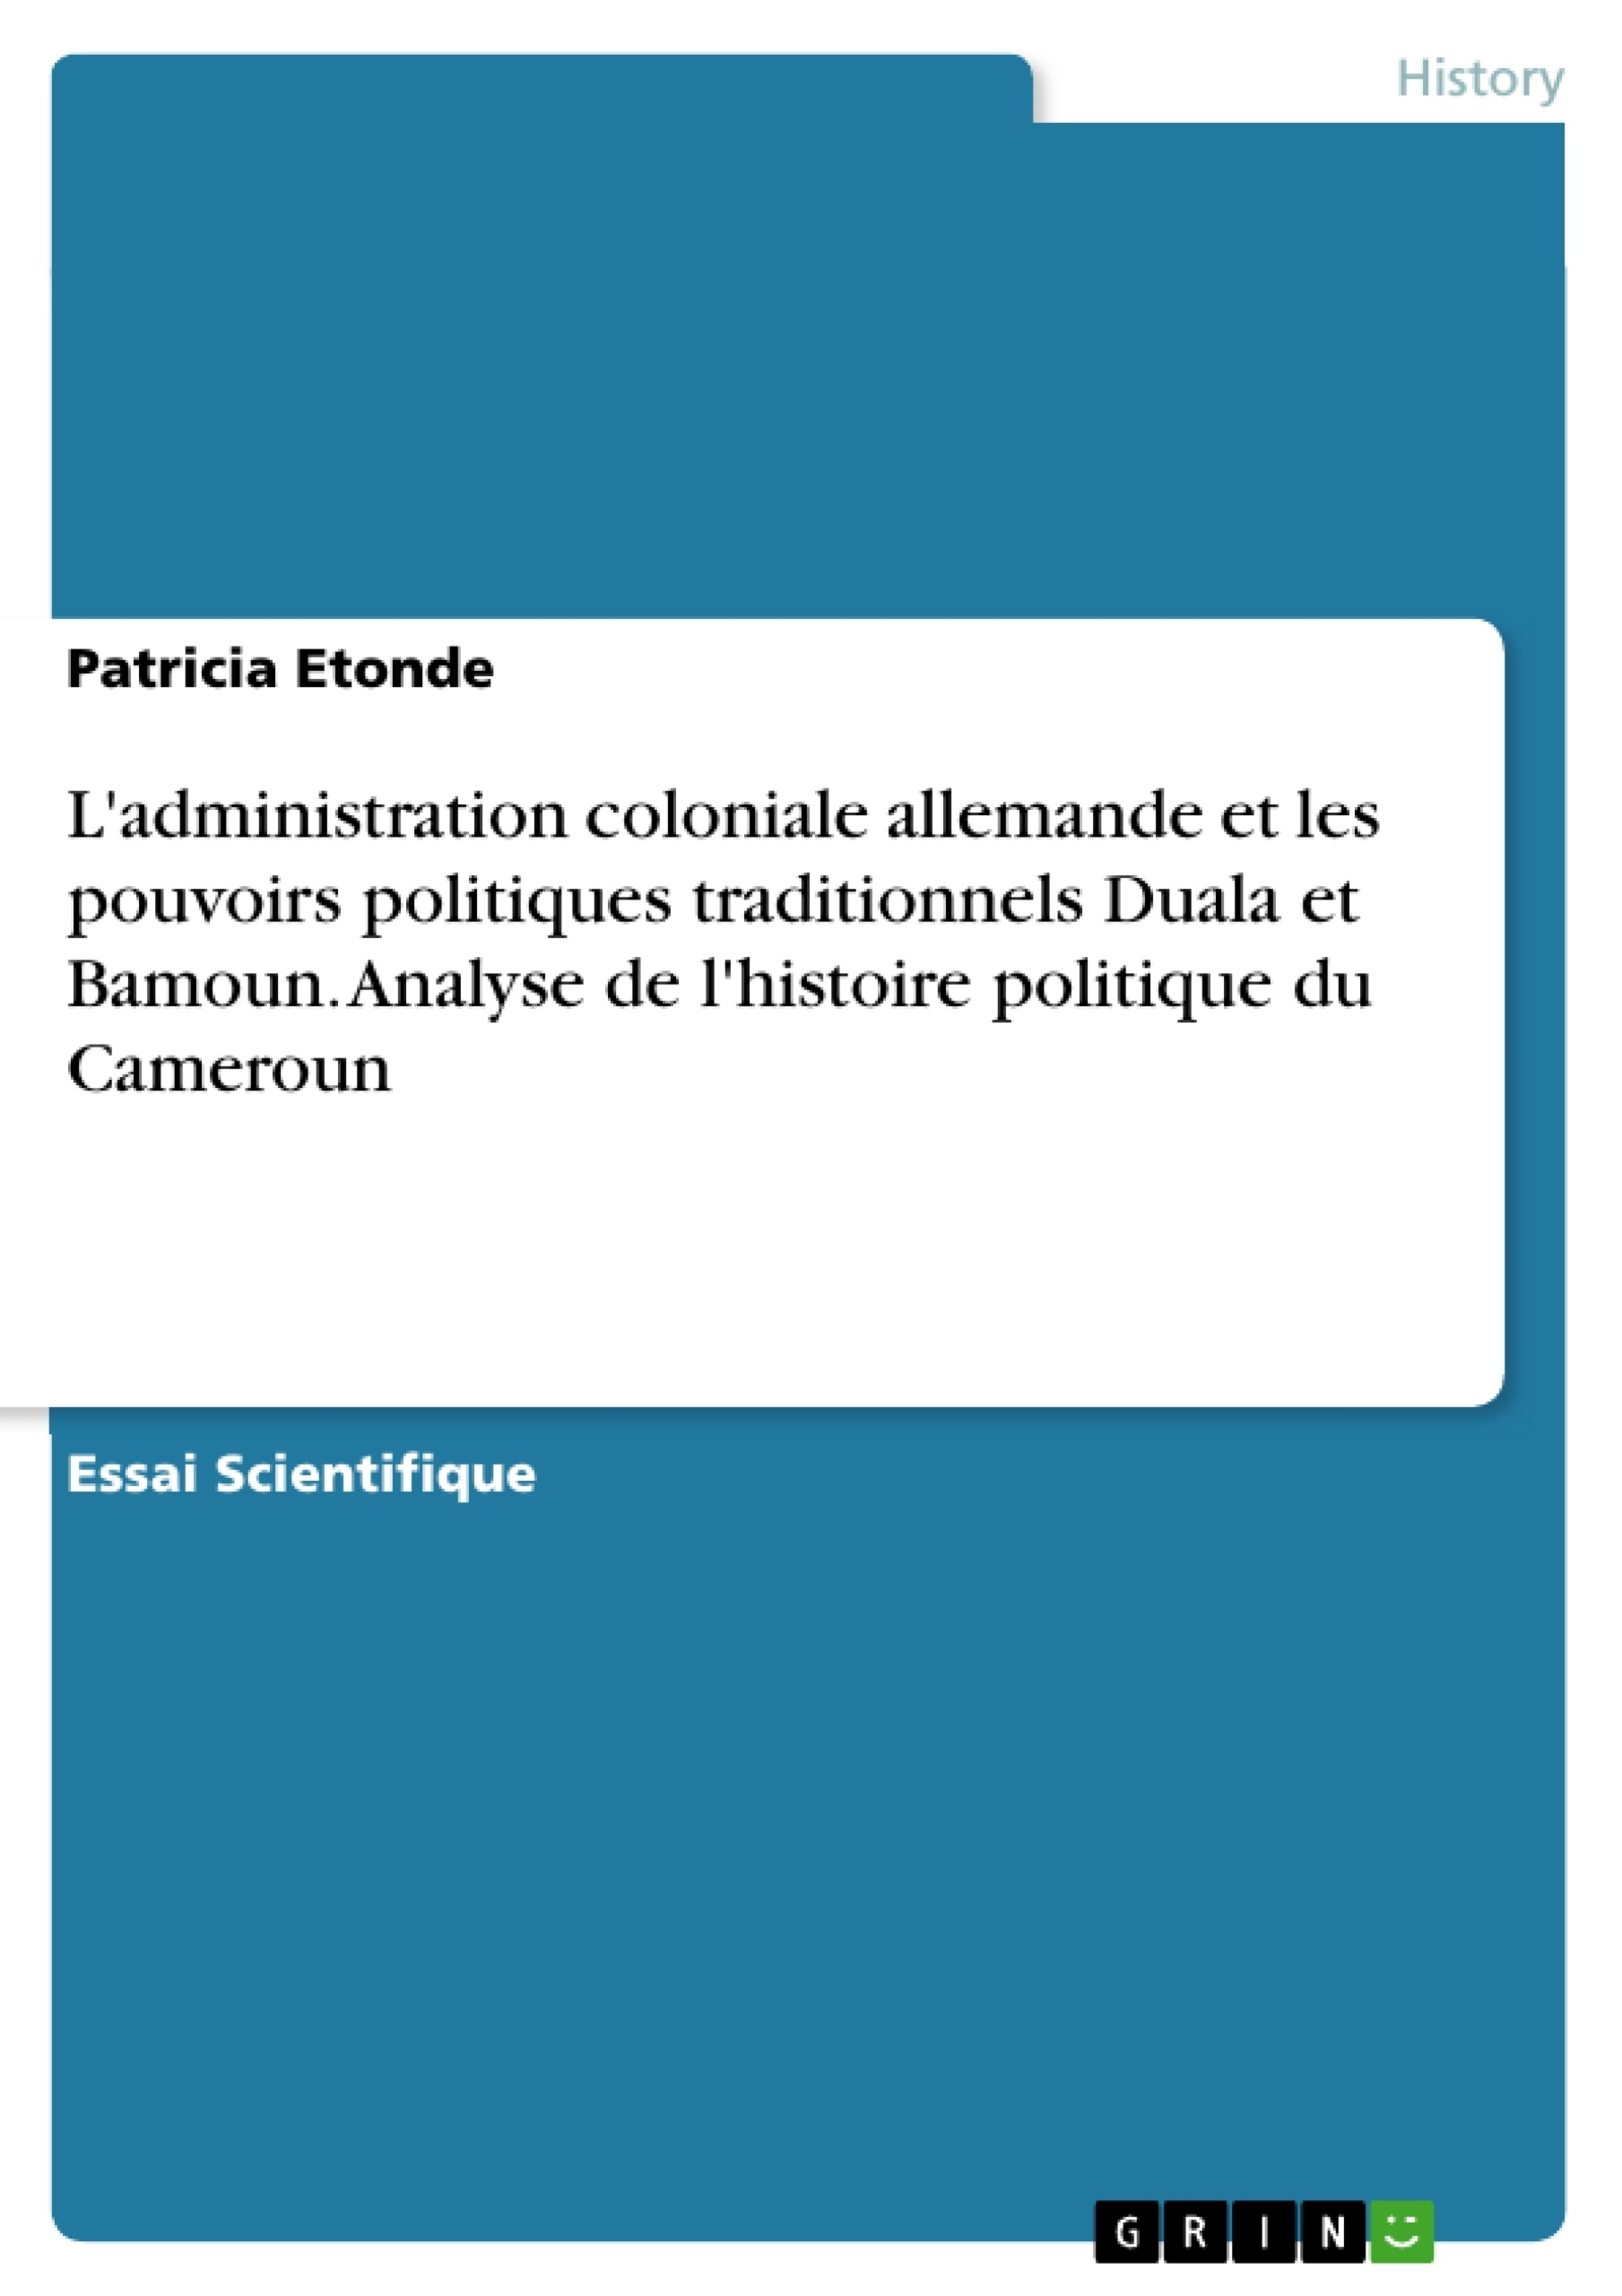 Titre: L'administration coloniale allemande et les pouvoirs politiques traditionnels Duala et Bamoun. Analyse de l'histoire politique du Cameroun